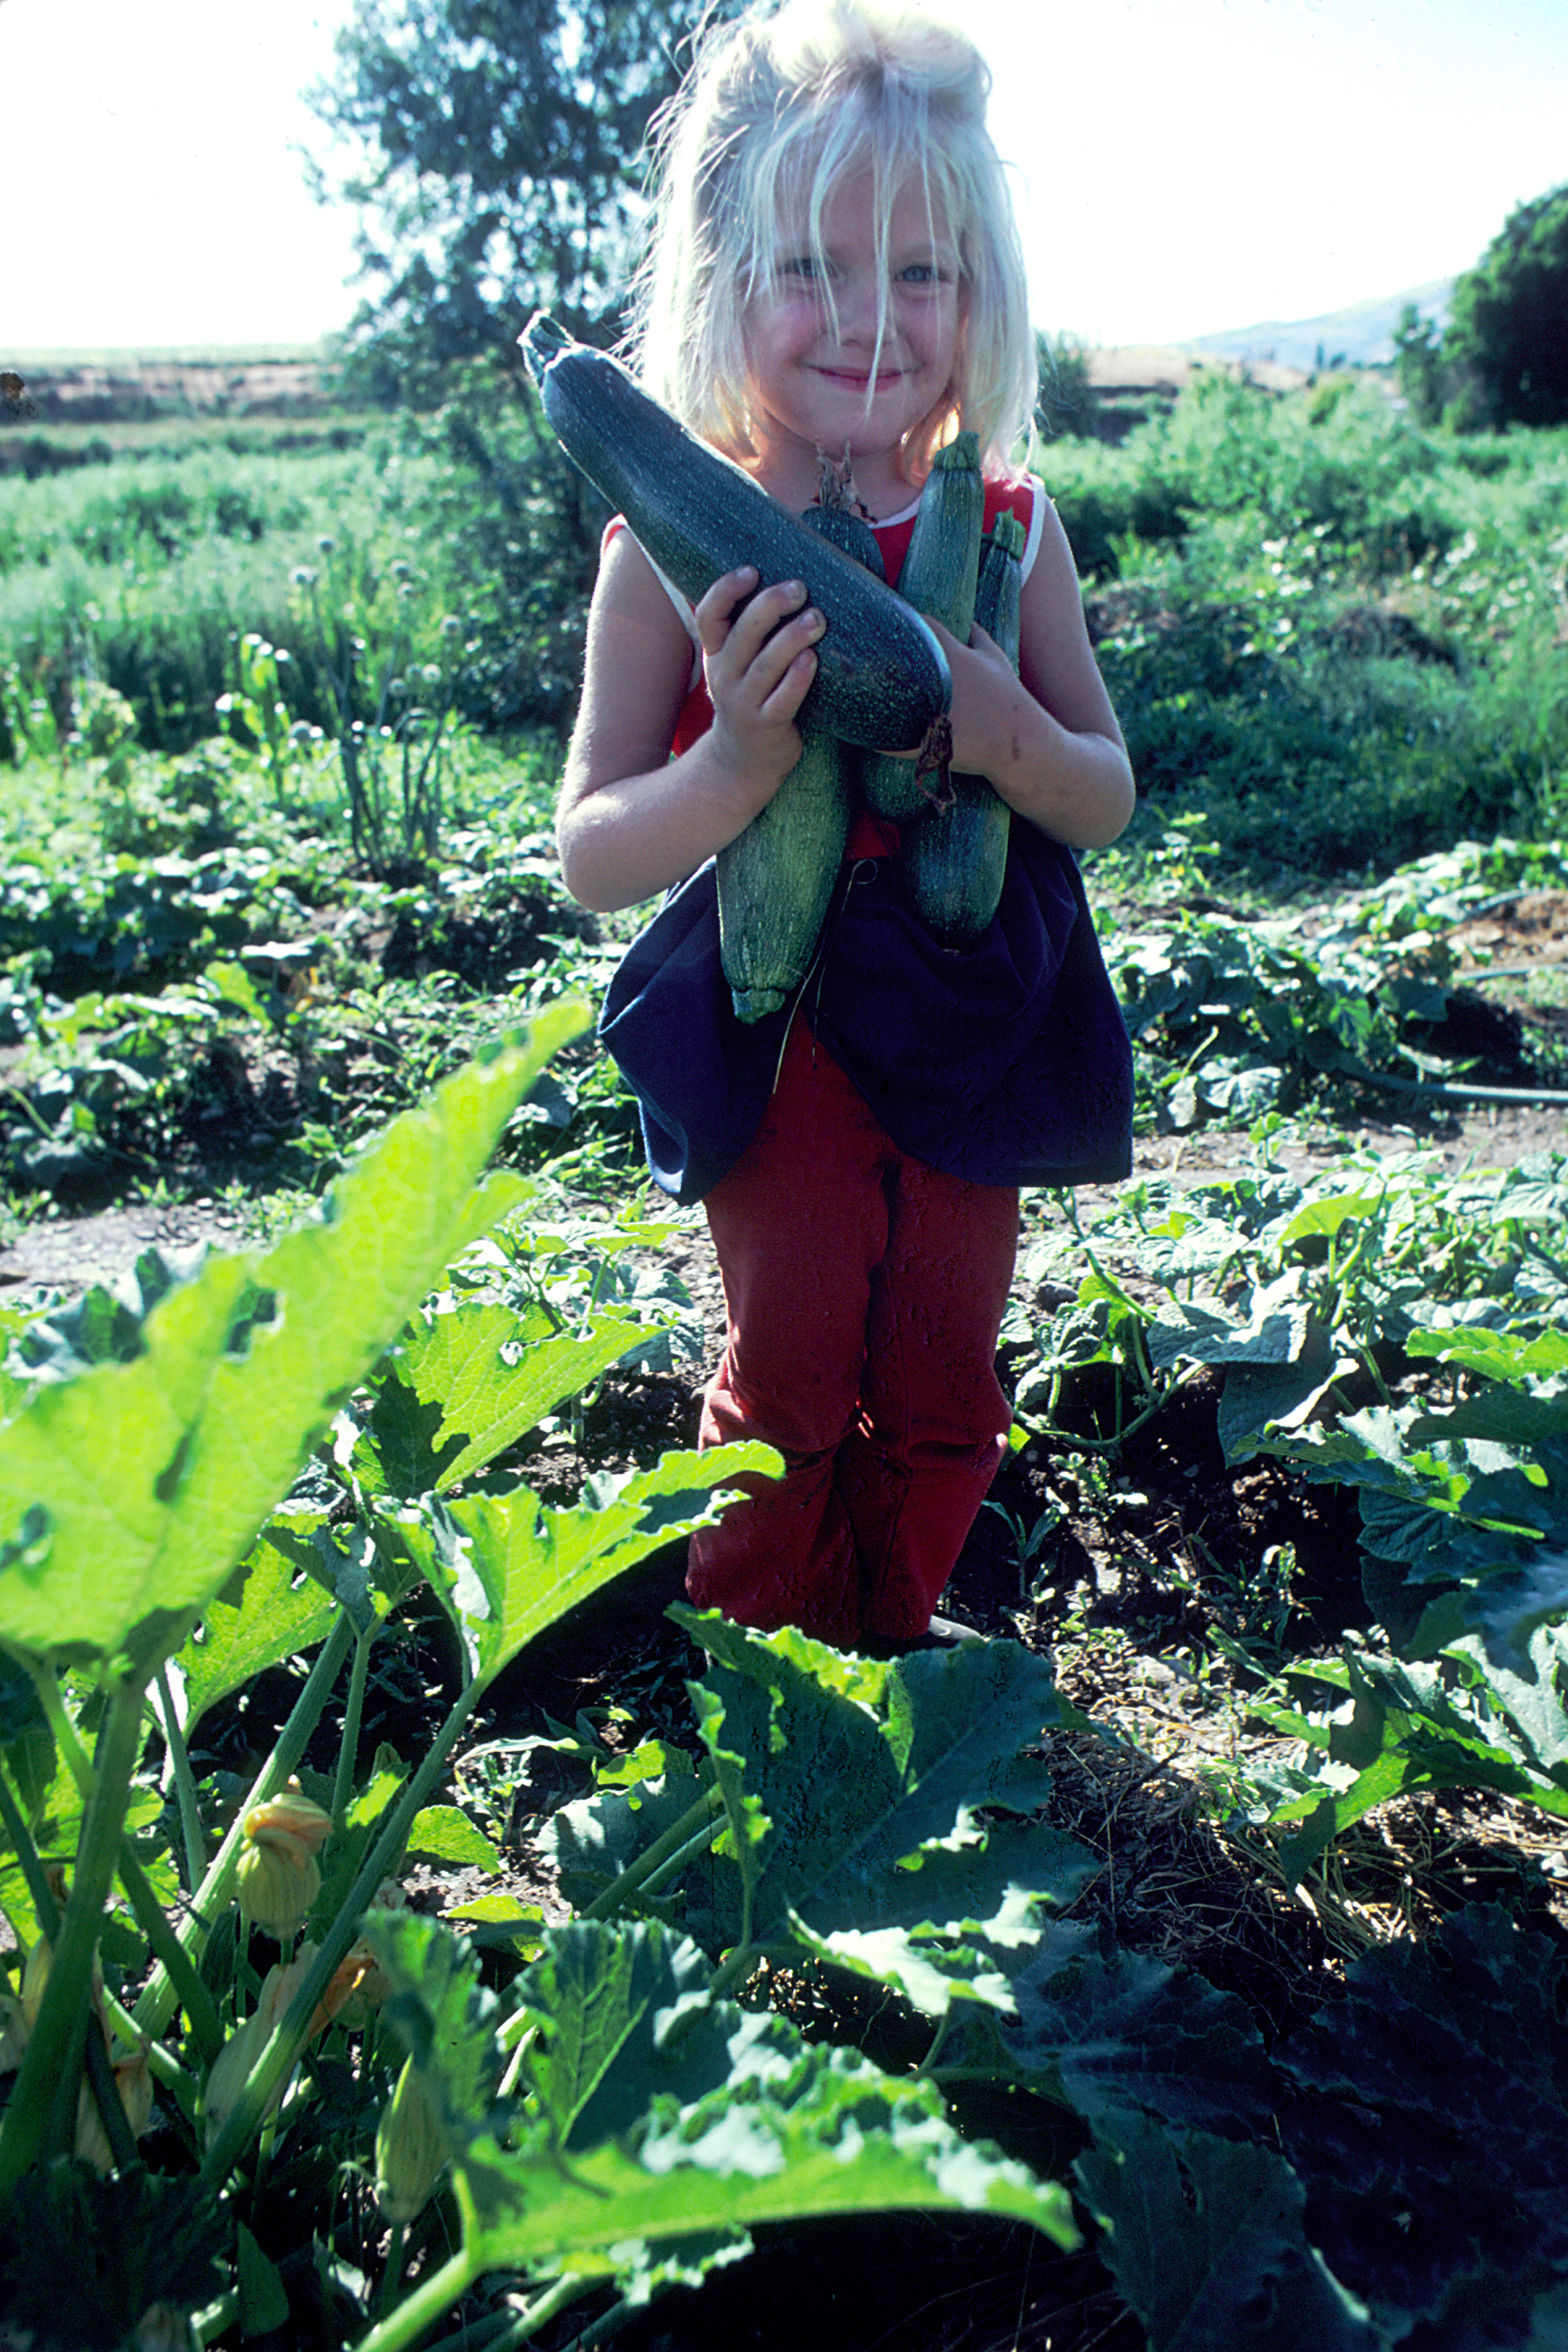 Girl holding zucchini